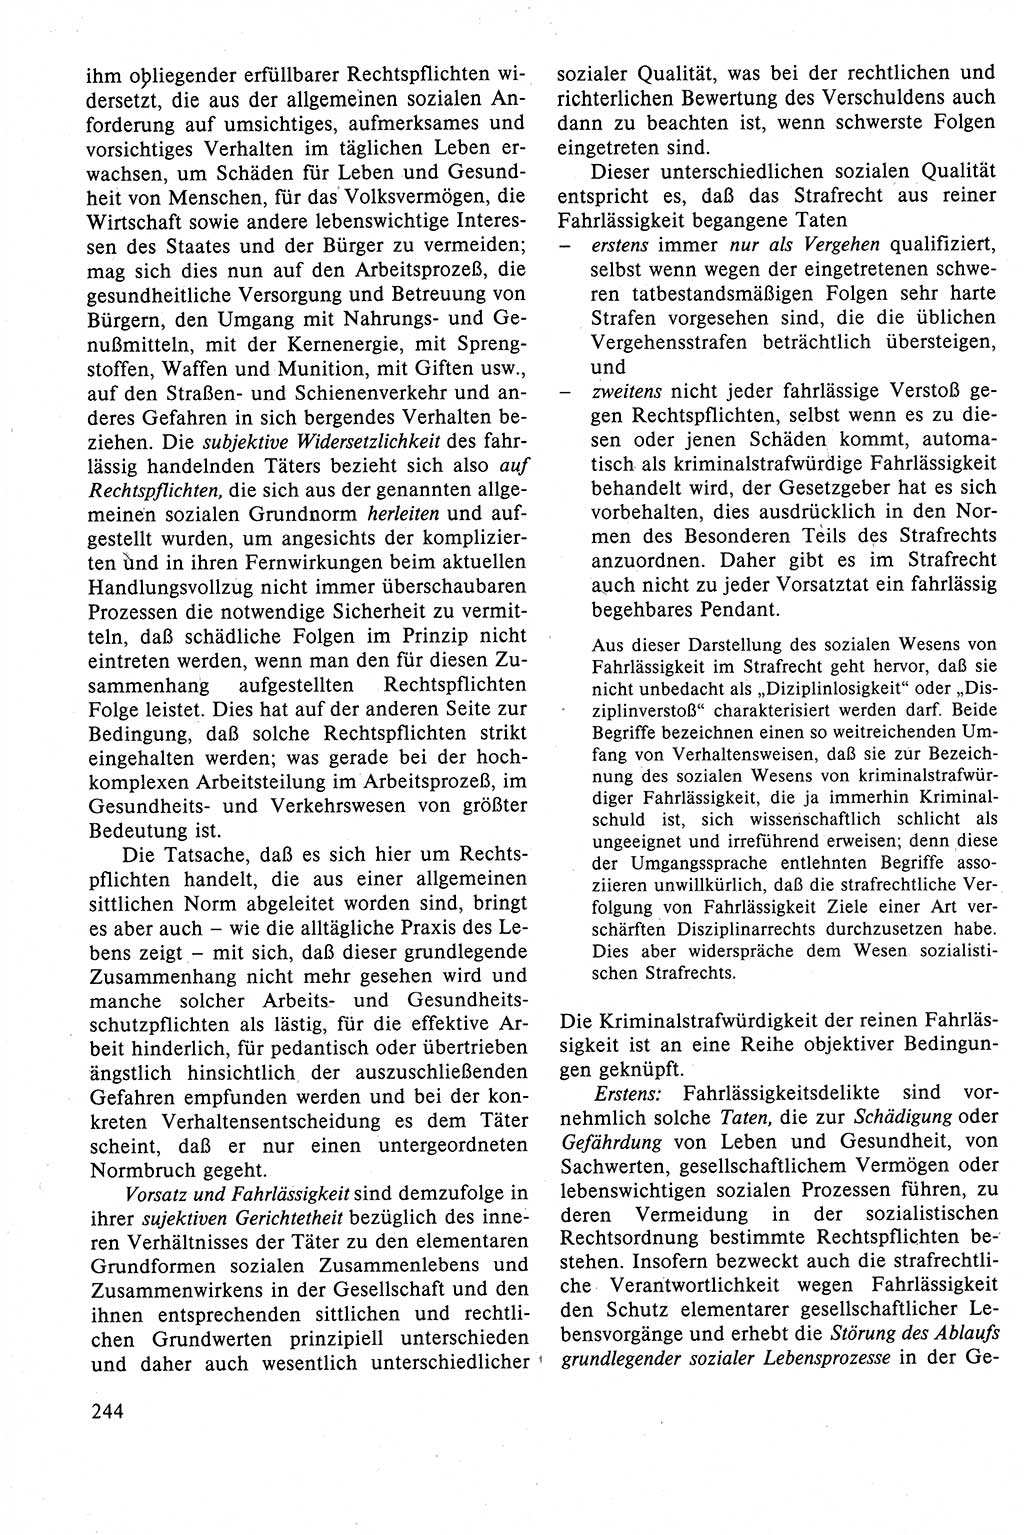 Strafrecht der DDR (Deutsche Demokratische Republik), Lehrbuch 1988, Seite 244 (Strafr. DDR Lb. 1988, S. 244)